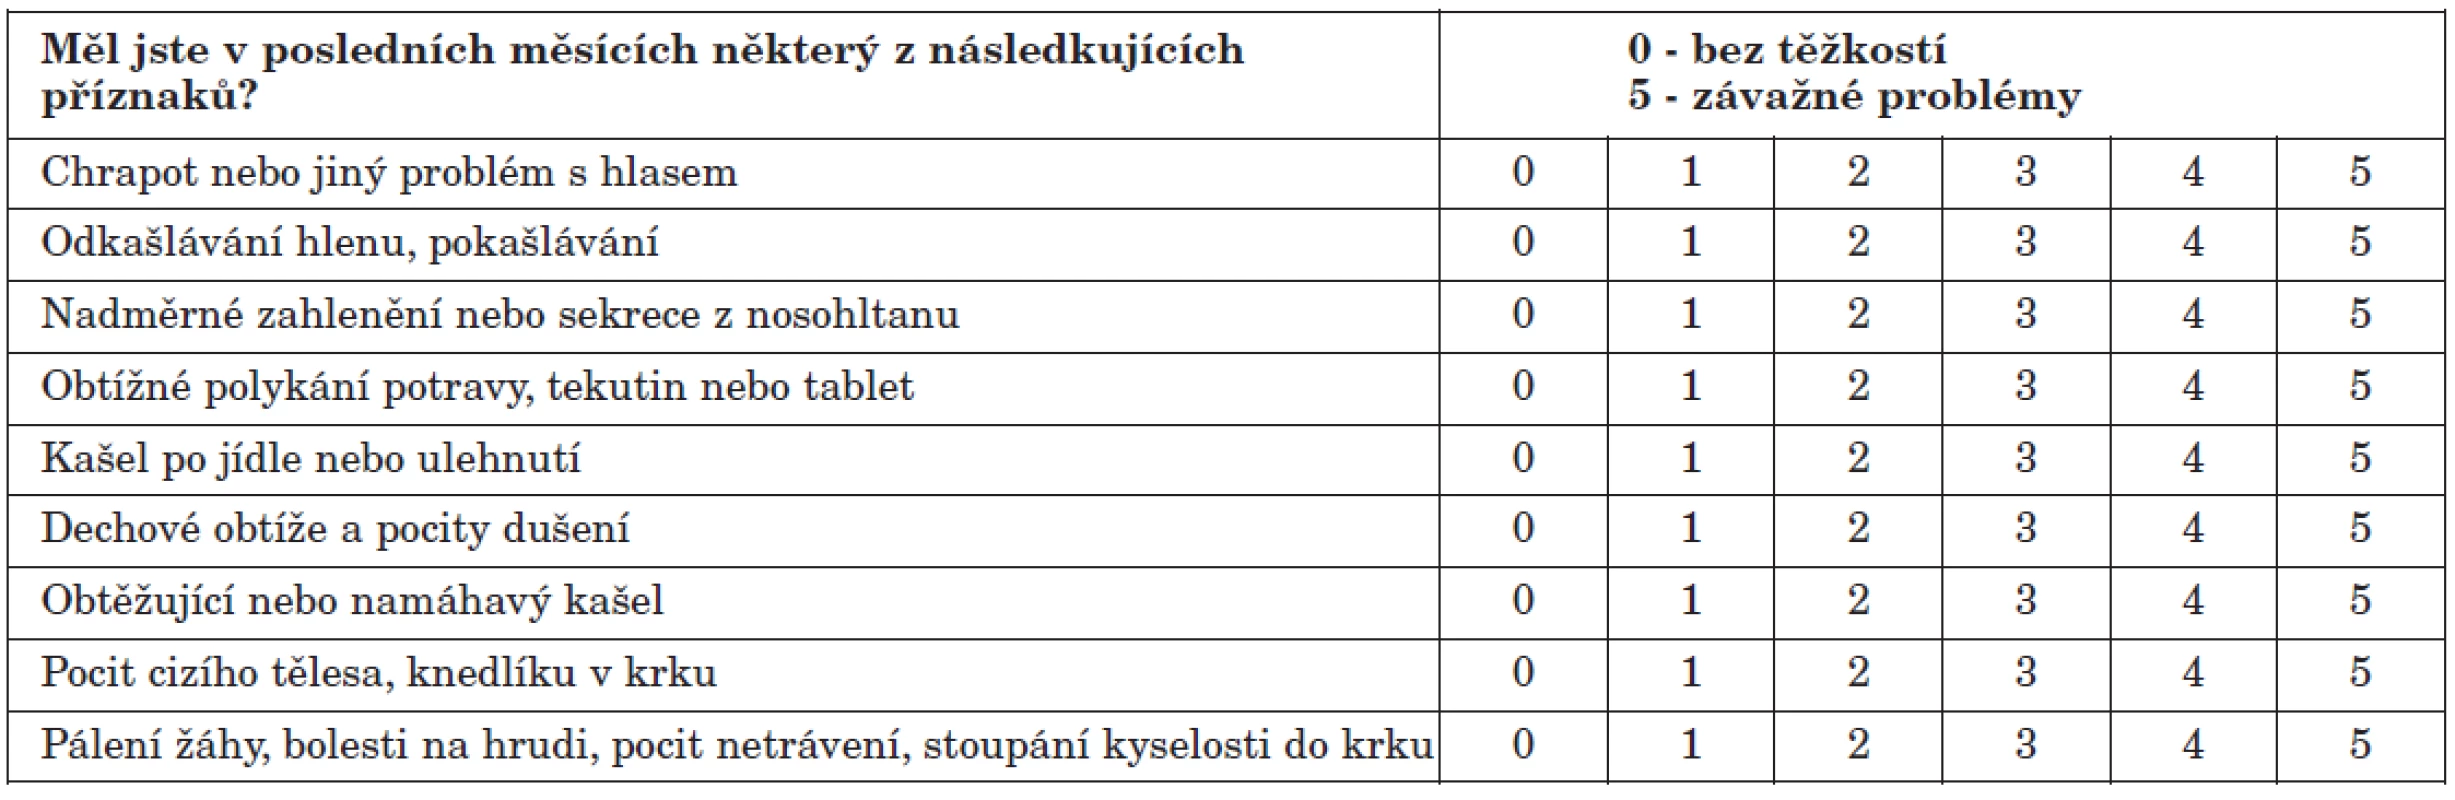 Index symptomů refluxu (Reflux symptoms index) podle Belafského (4, 5).